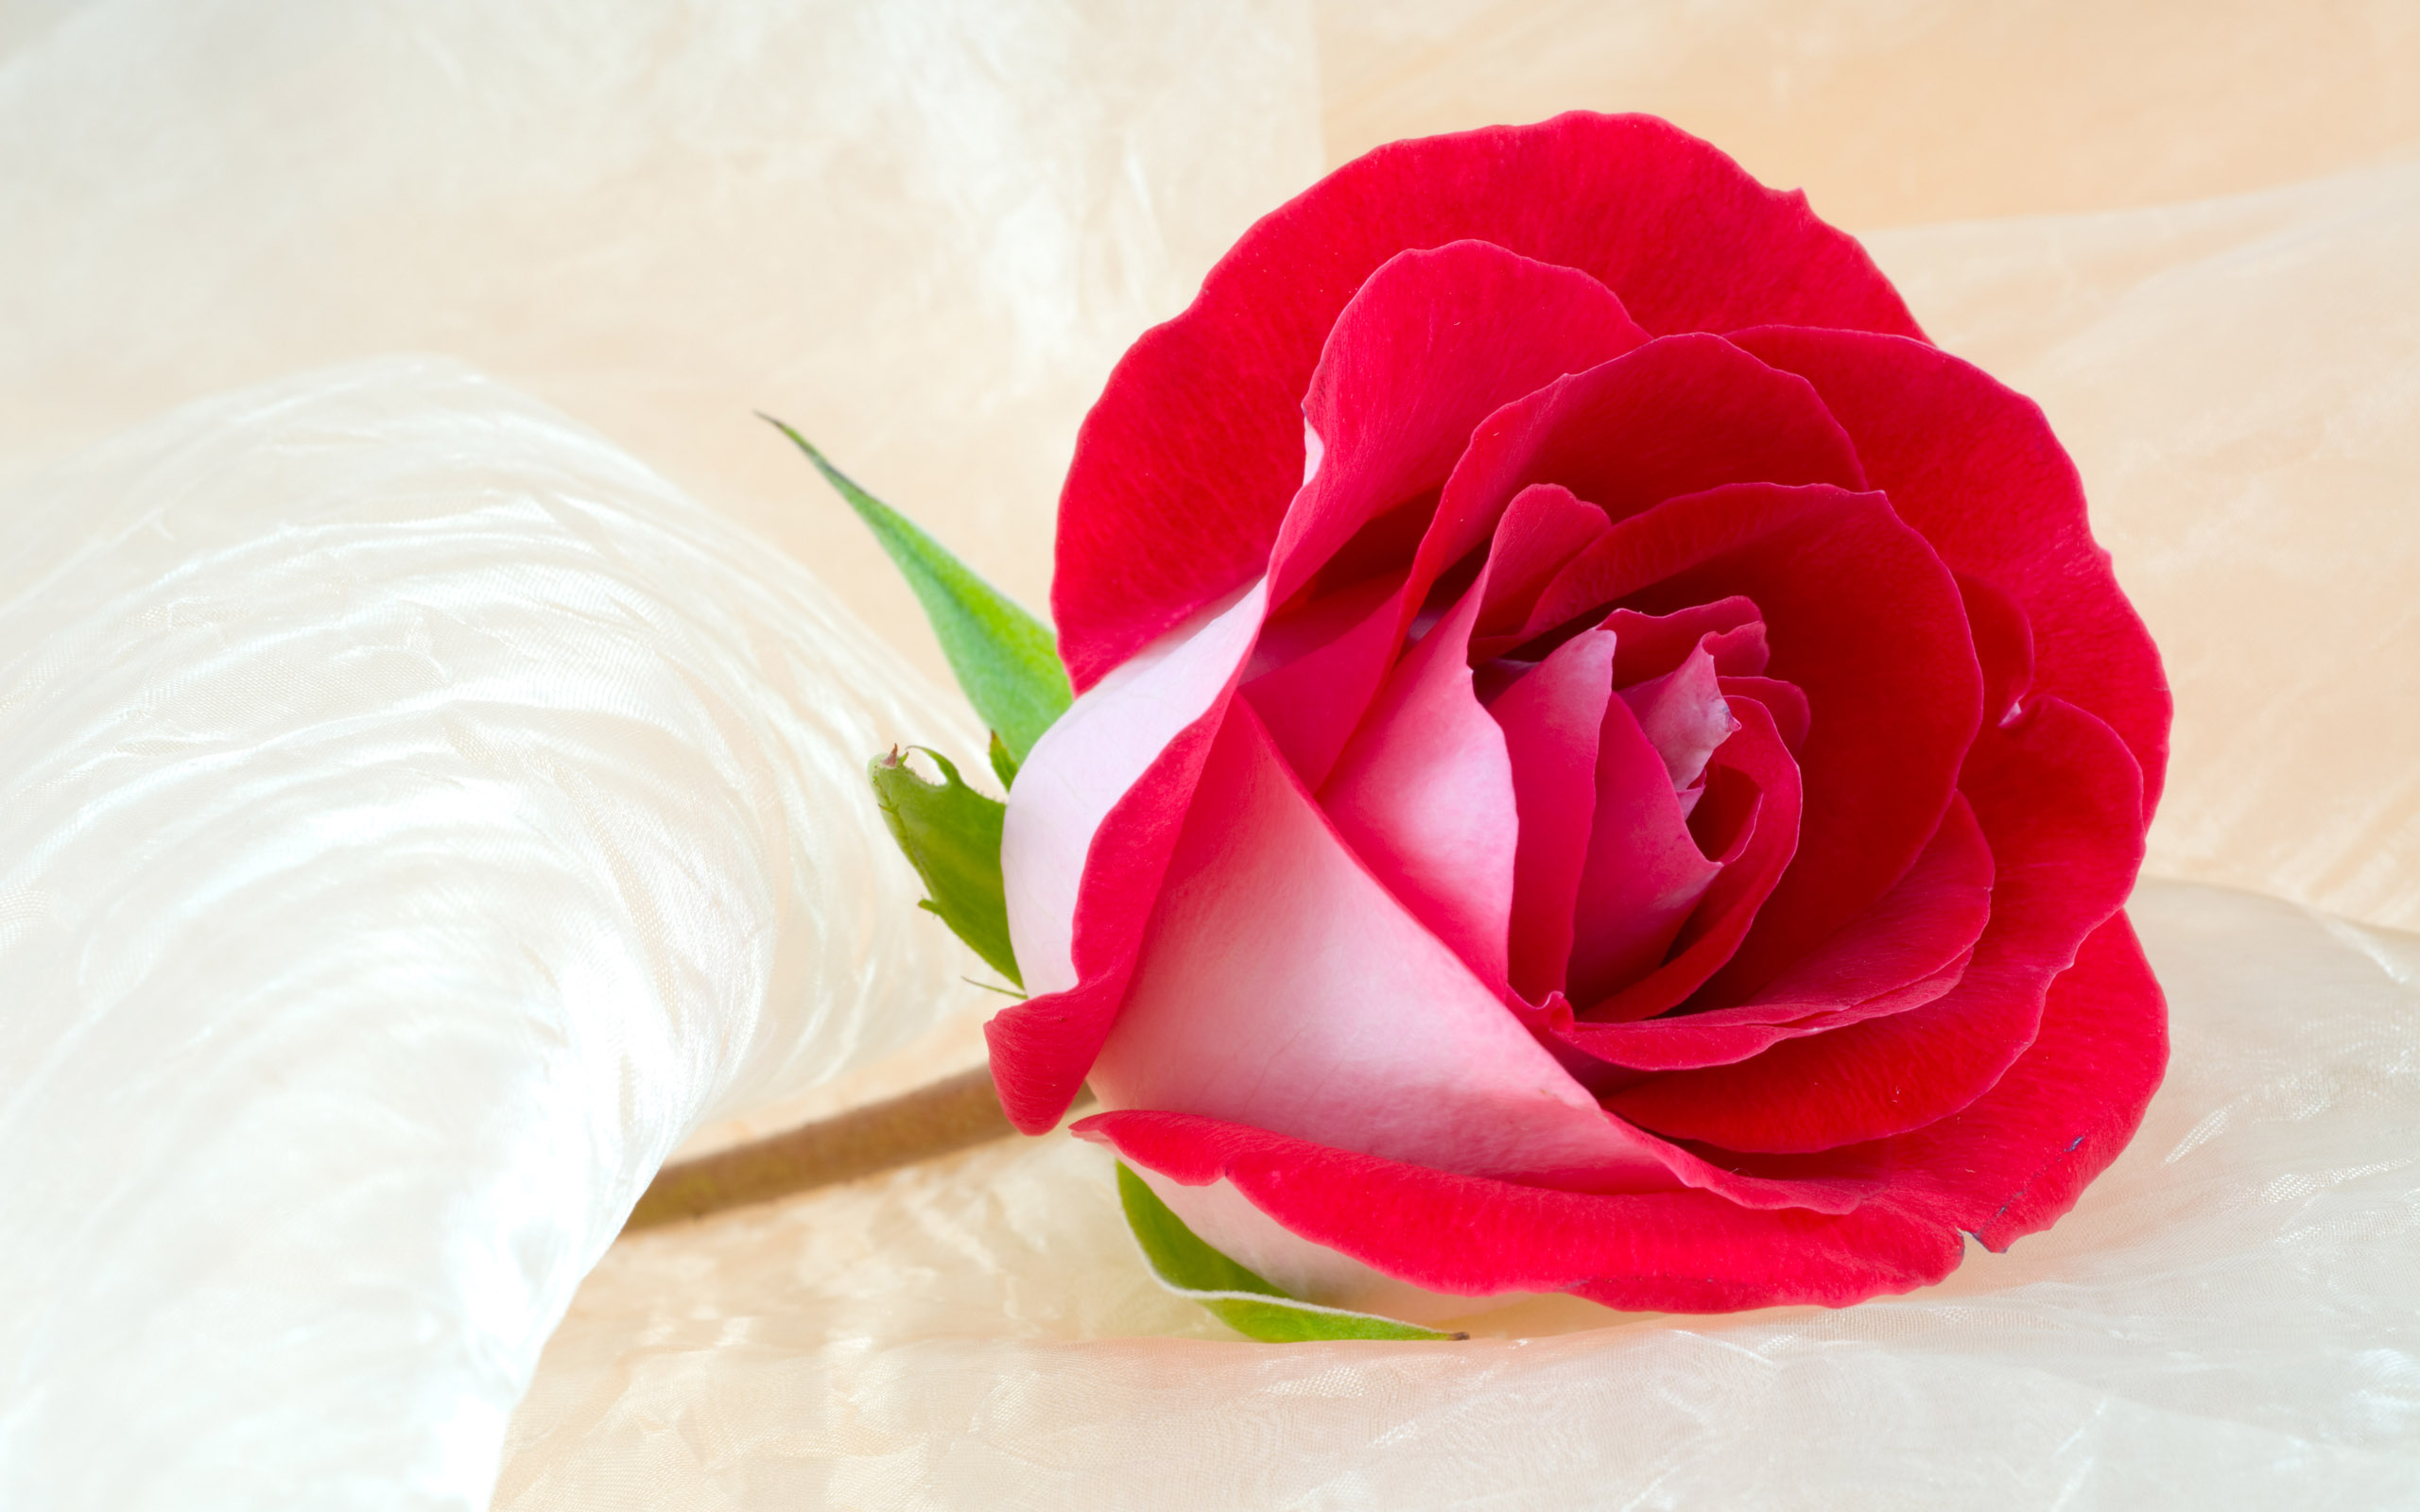 Hoa hồng đỏ là tình yêu mãnh liệt và nồng cháy